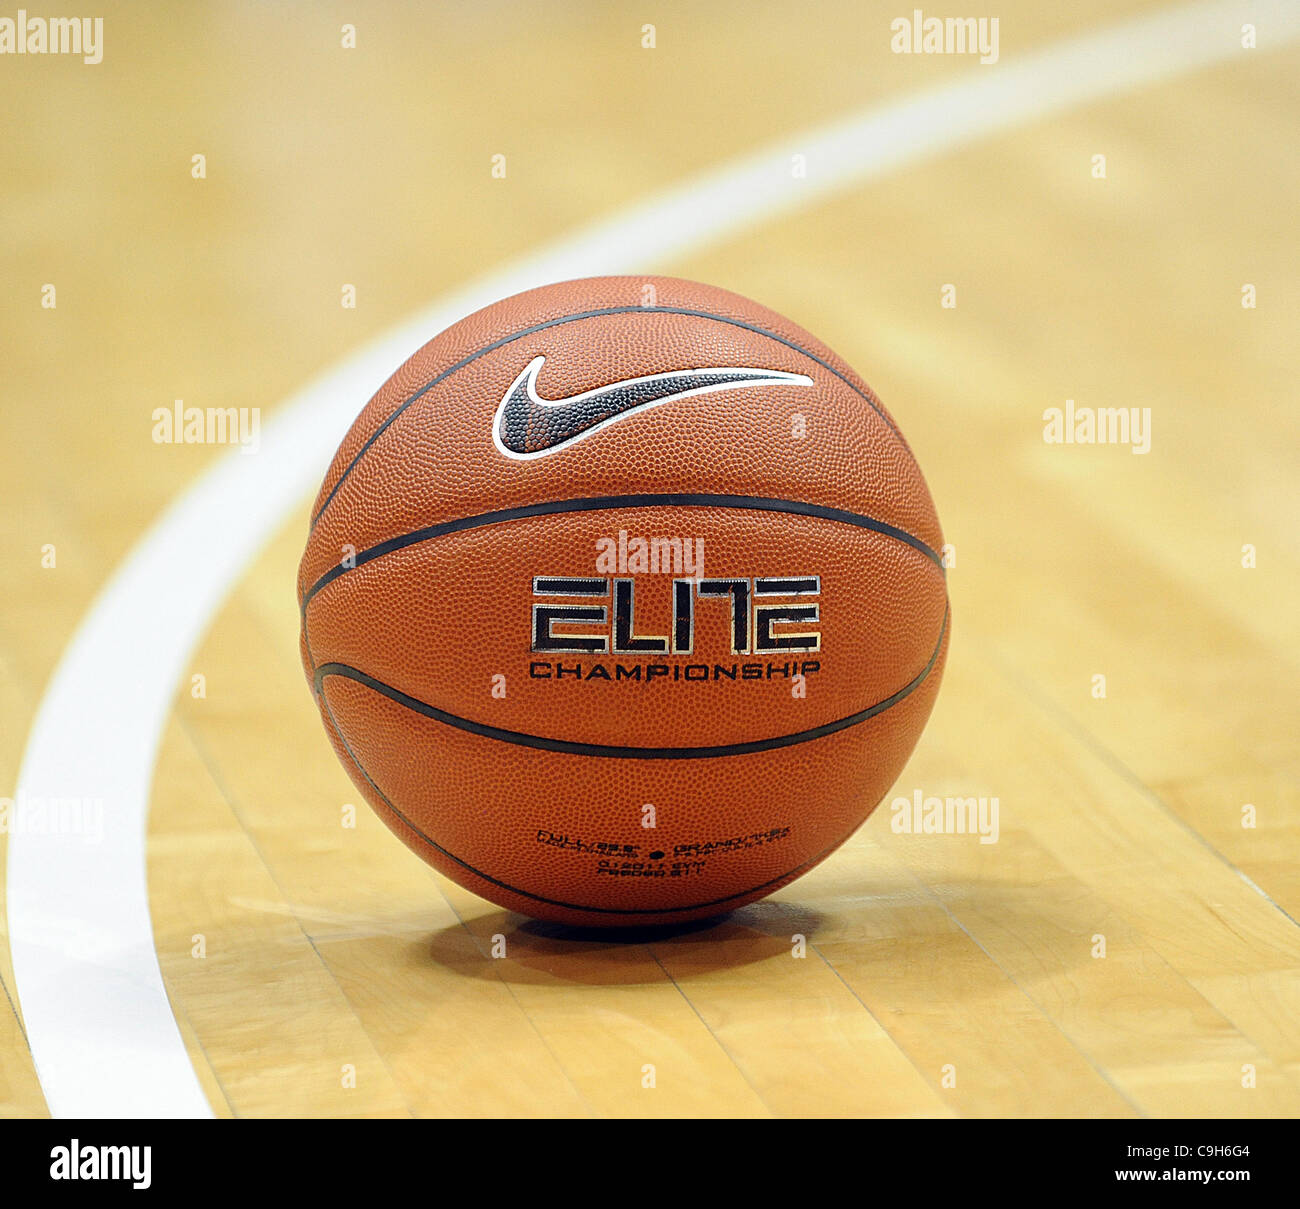 Nike basketball immagini e fotografie stock ad alta risoluzione - Alamy